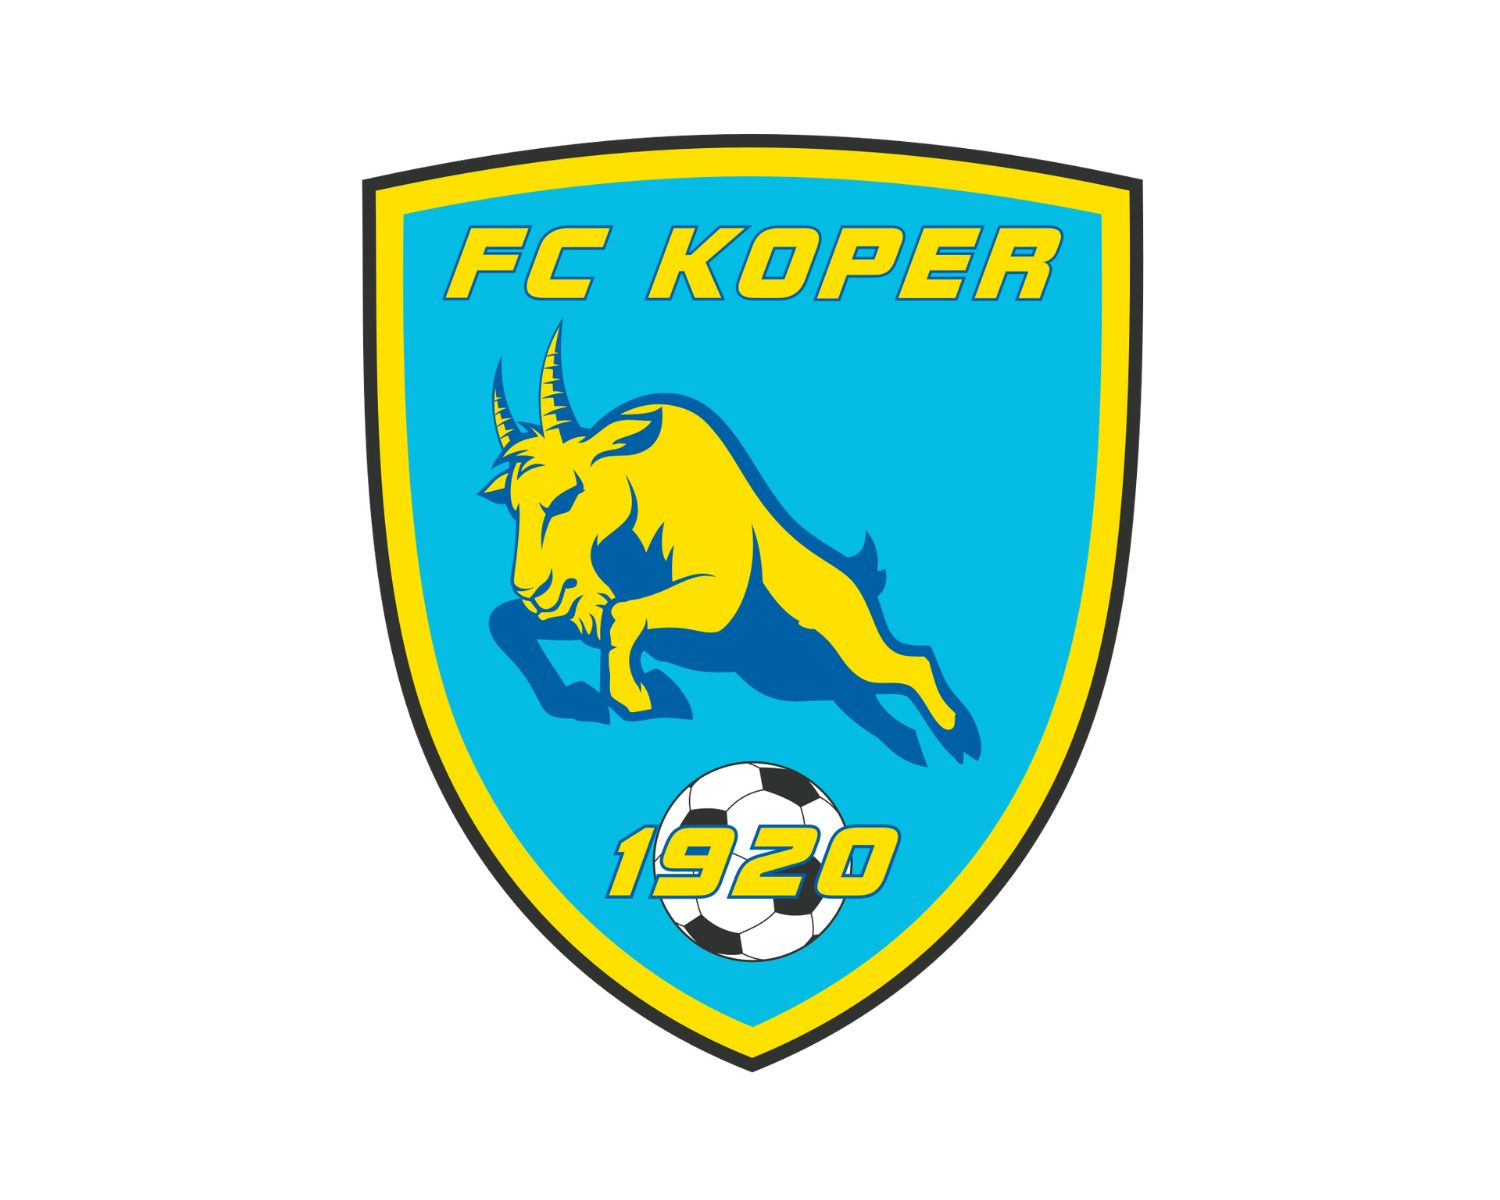 fc-koper-23-football-club-facts